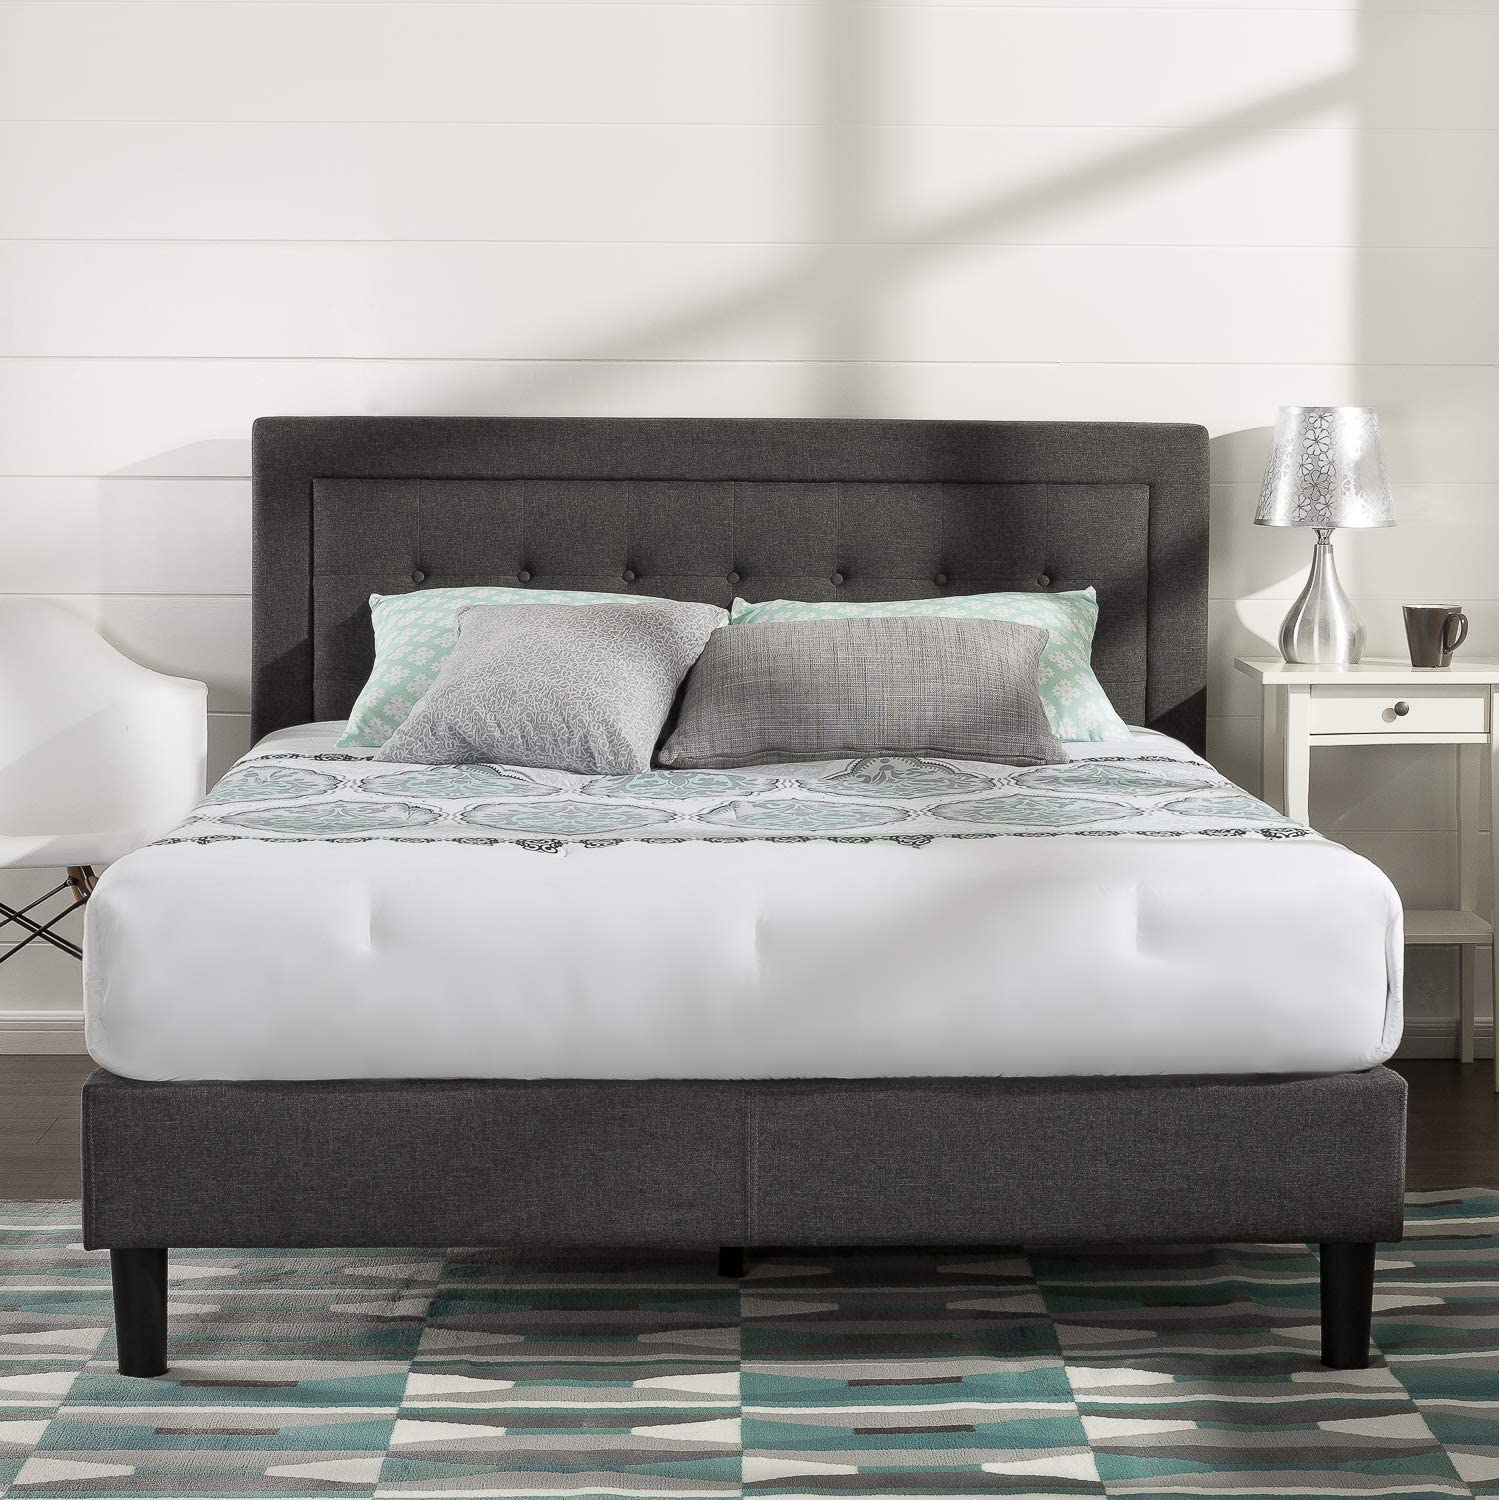 6 Best Bed Frames For Sleep Number, Adjustable Bed Frame For Sleep Number